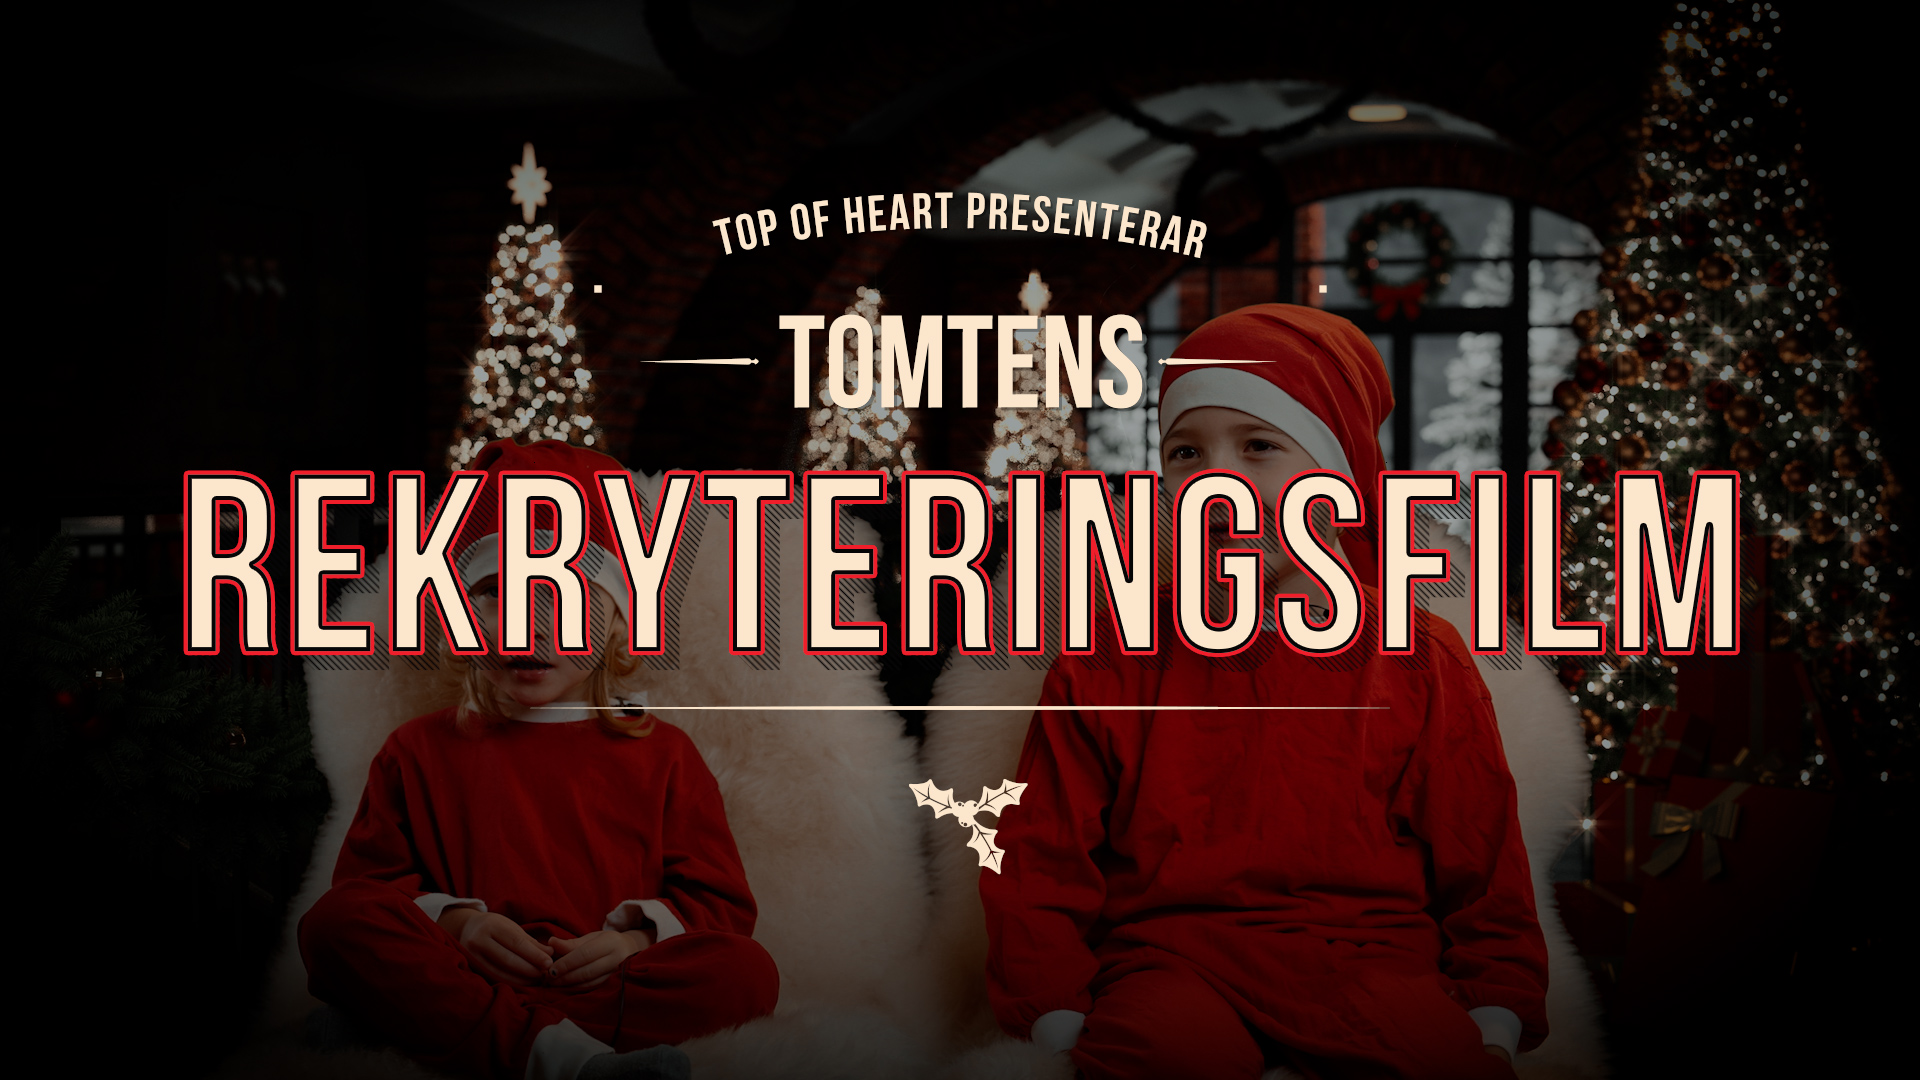 Tomtens rekryteringsfilm: en julhälsning från Top of Heart